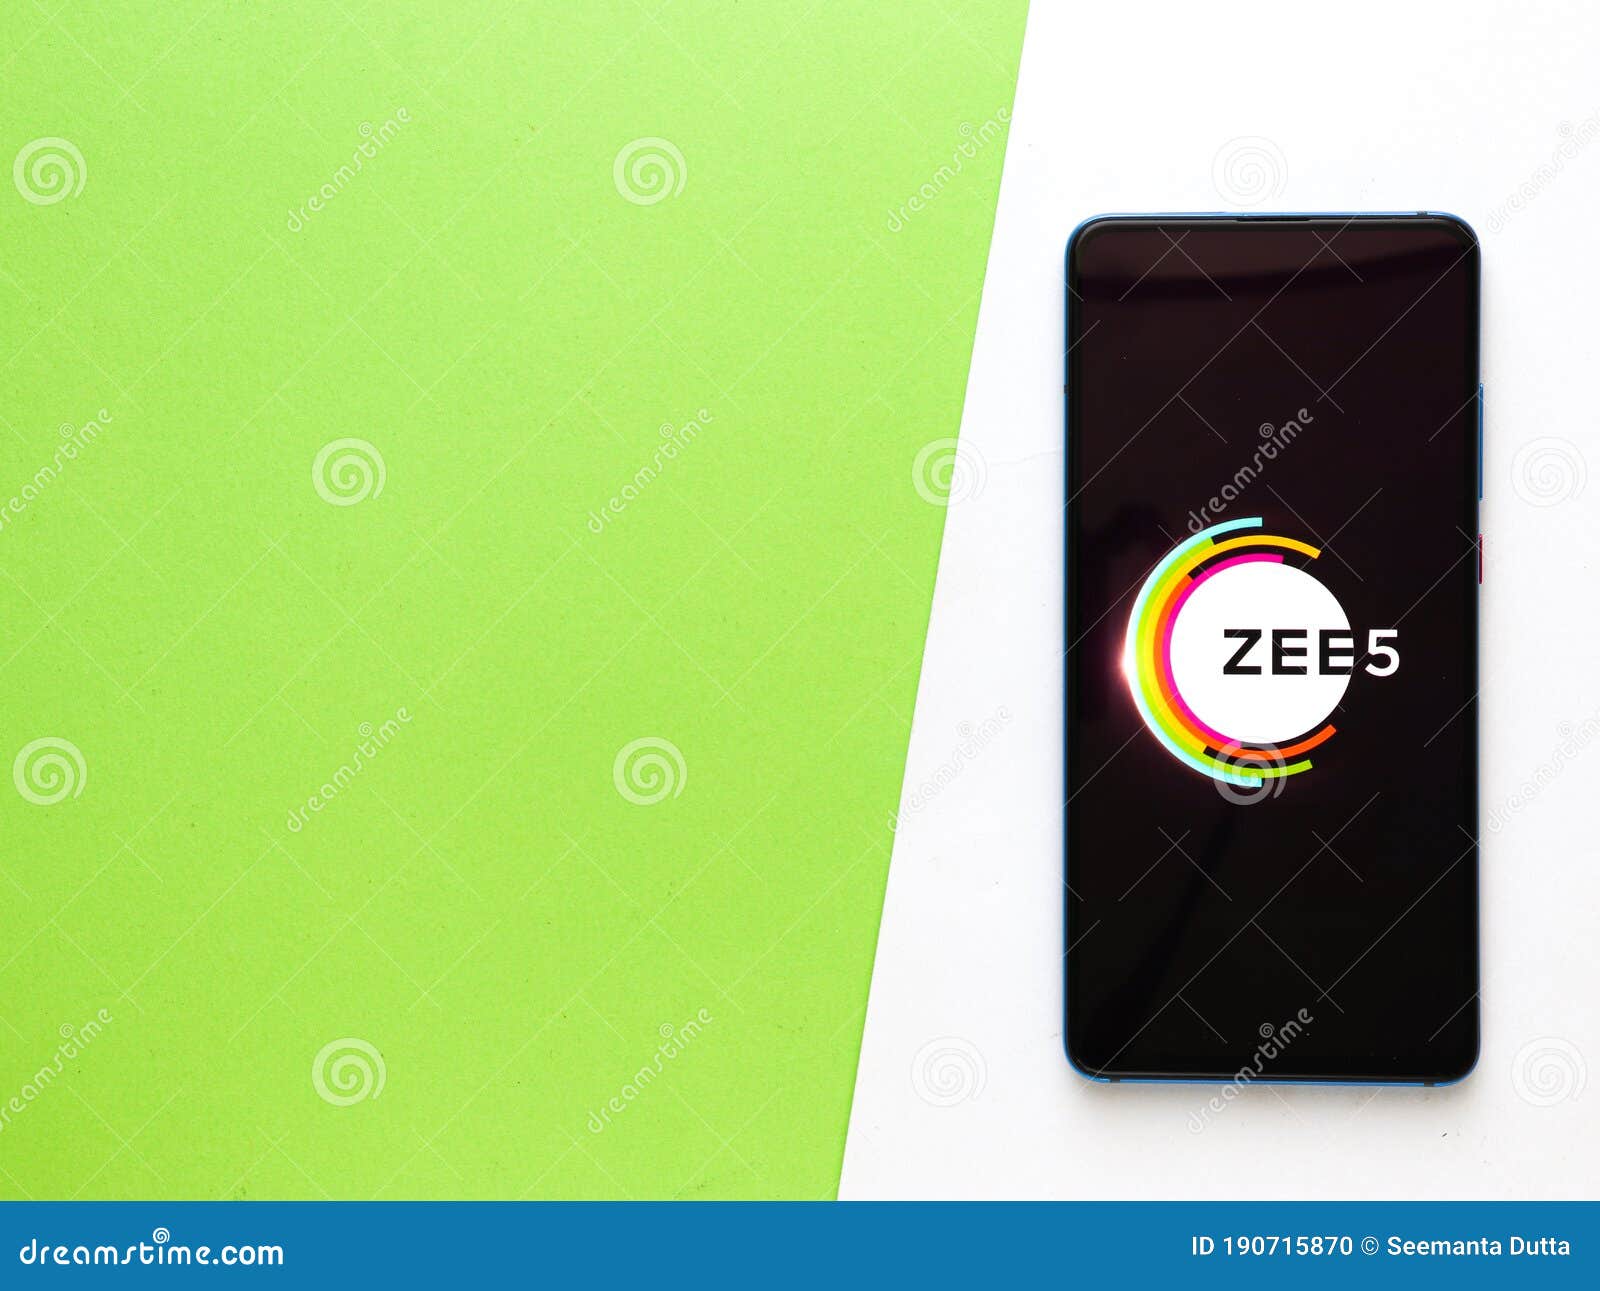 zee5 app for iphone